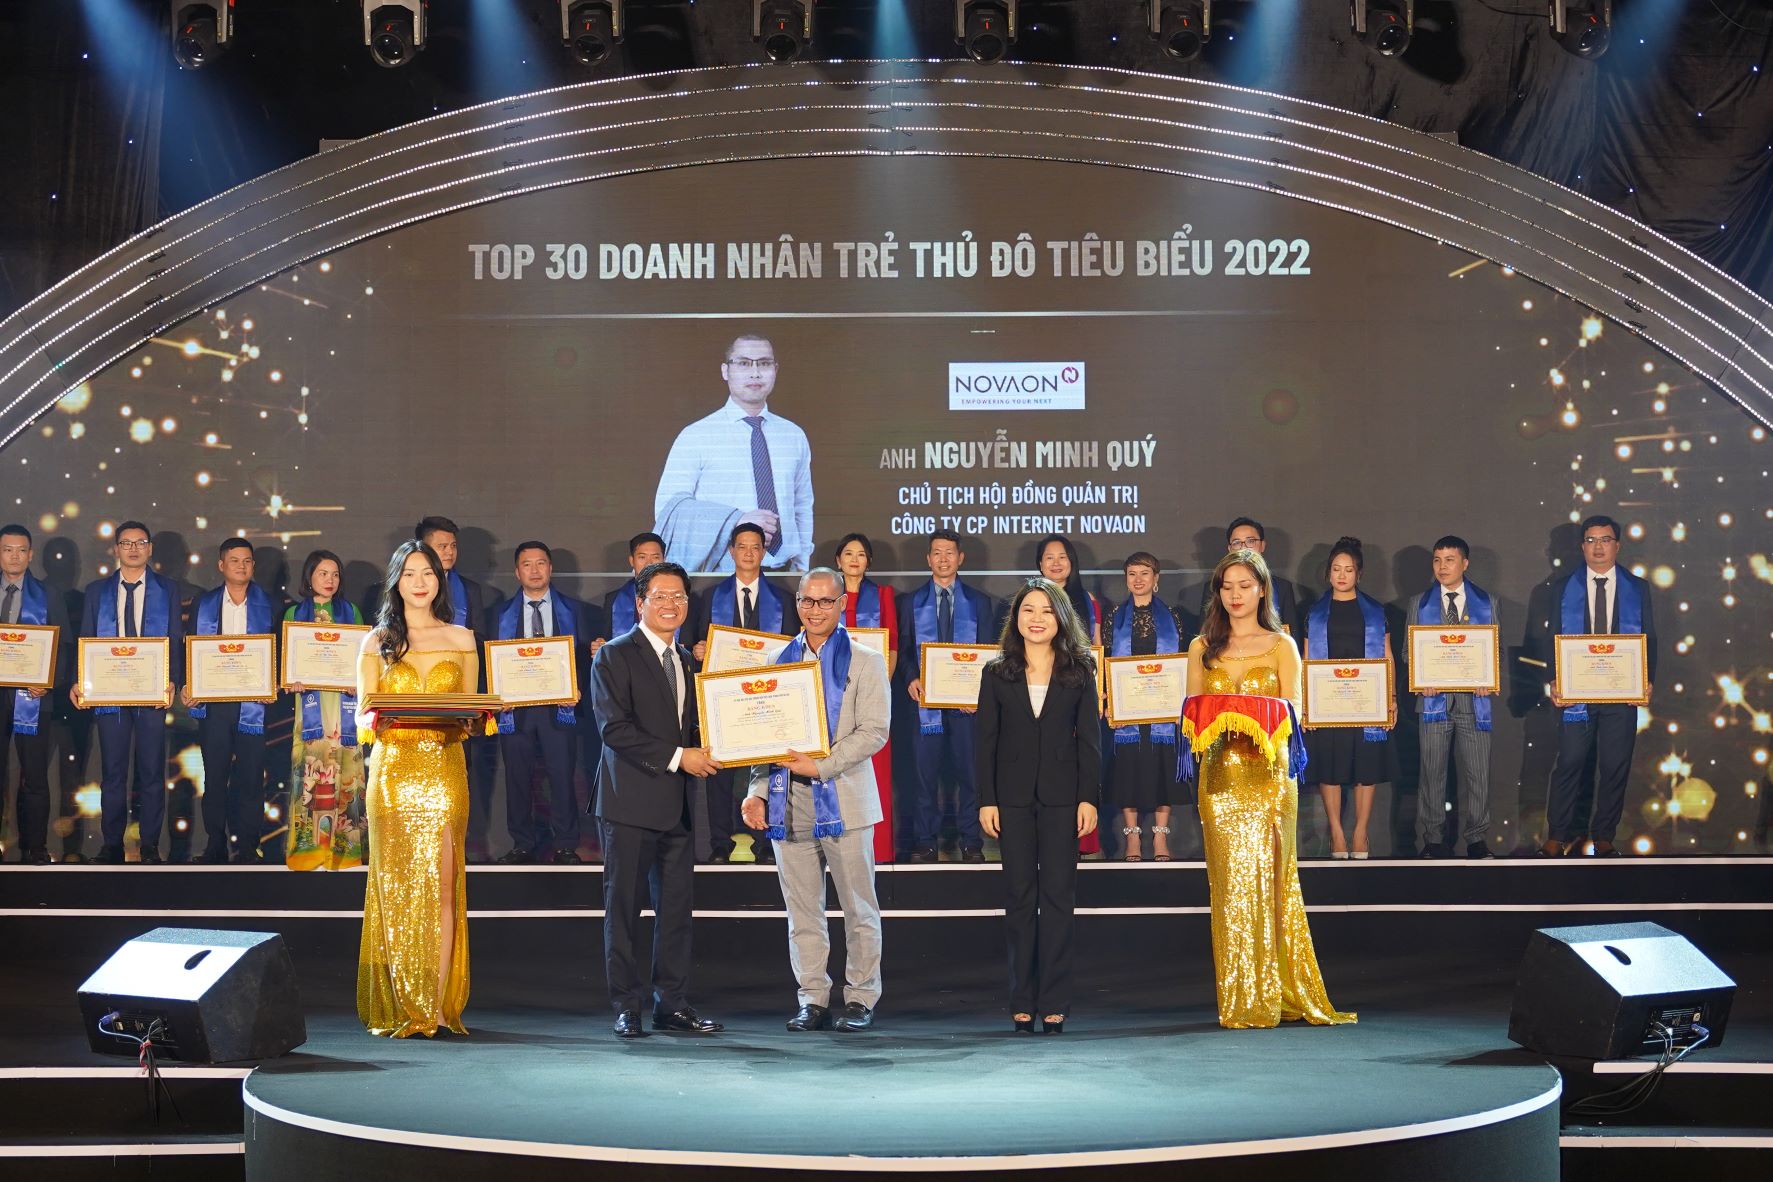 Anh Nguyễn Minh Quý - Chủ tịch HĐQT Tập đoàn Novaon nhận giải thưởng Top30 Doanh nhân trẻ Thủ đô tiêu biểu 2022